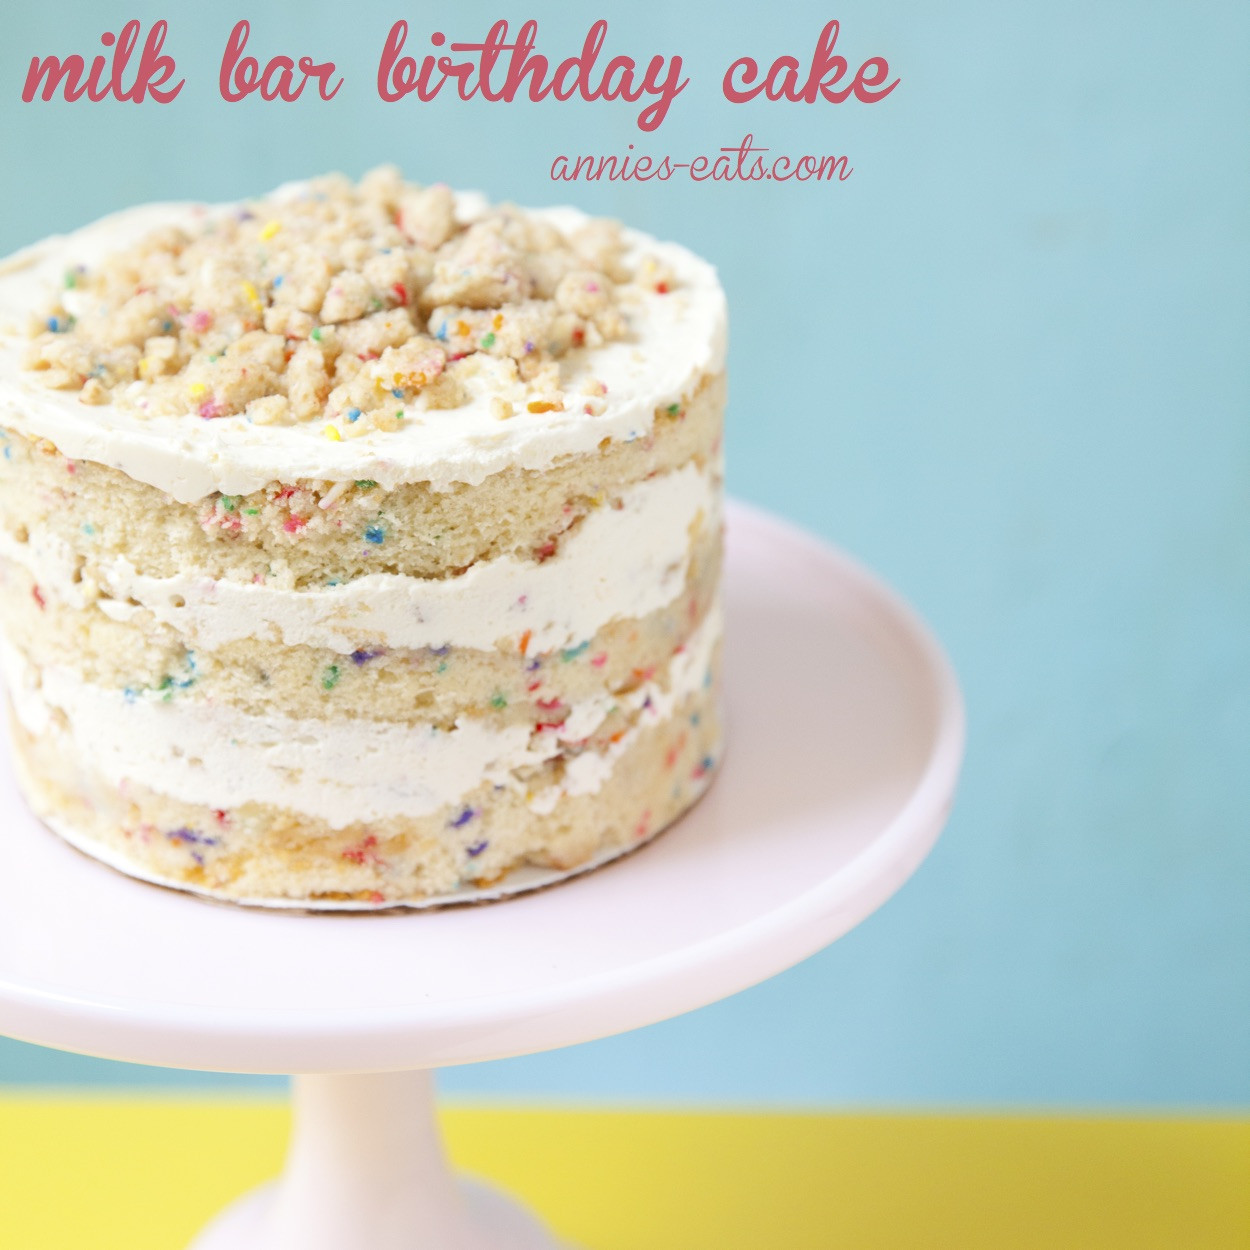 Best ideas about Milk Bar Birthday Cake
. Save or Pin milk bar birthday cake Annie s EatsAnnie s Eats Now.